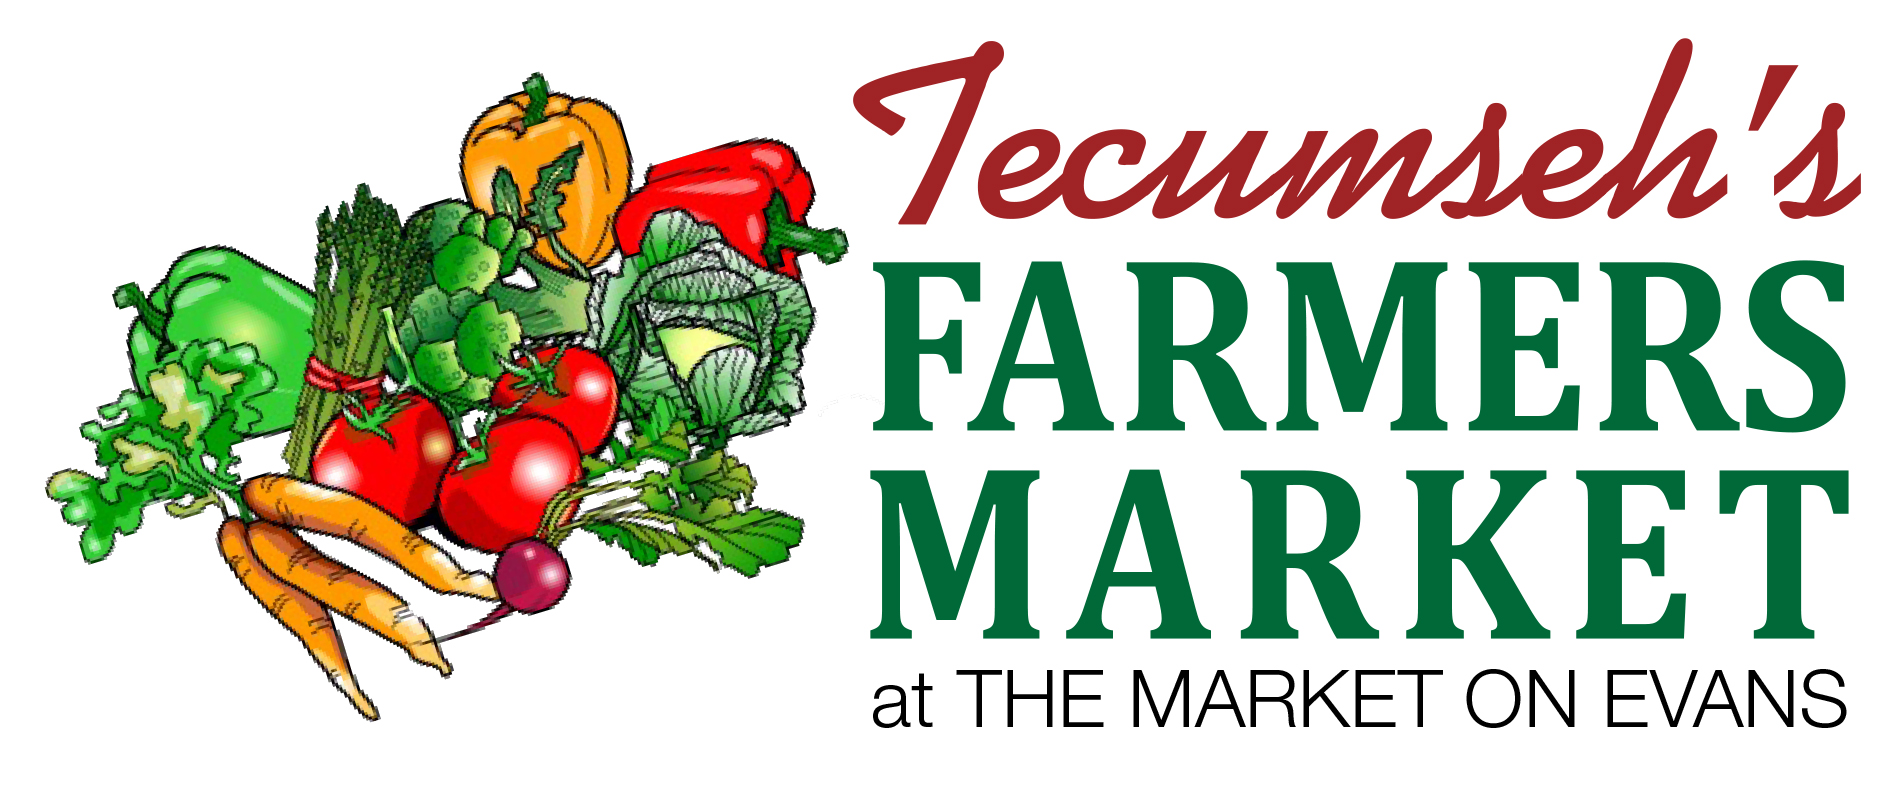 Tecumseh_Farmers_Market_logo_2018